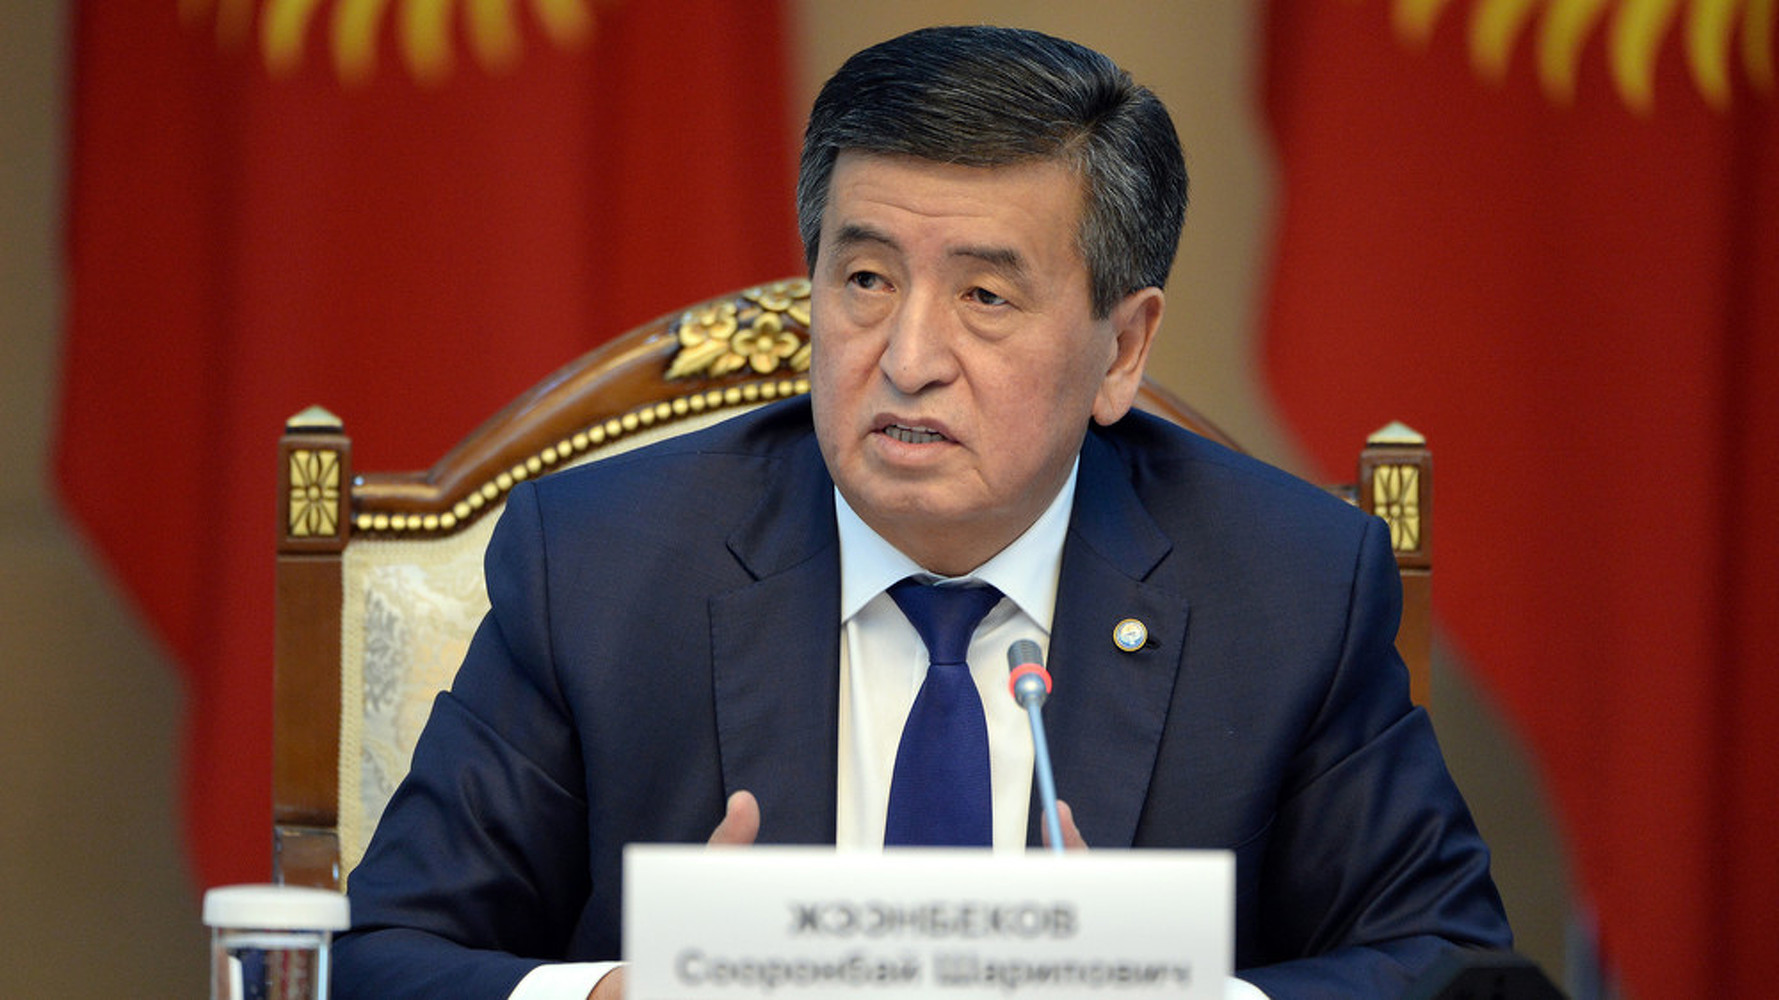 В Кыргызстане стало очень много баатыров, - Жээнбеков о количестве лиц со званиями — Today.kg